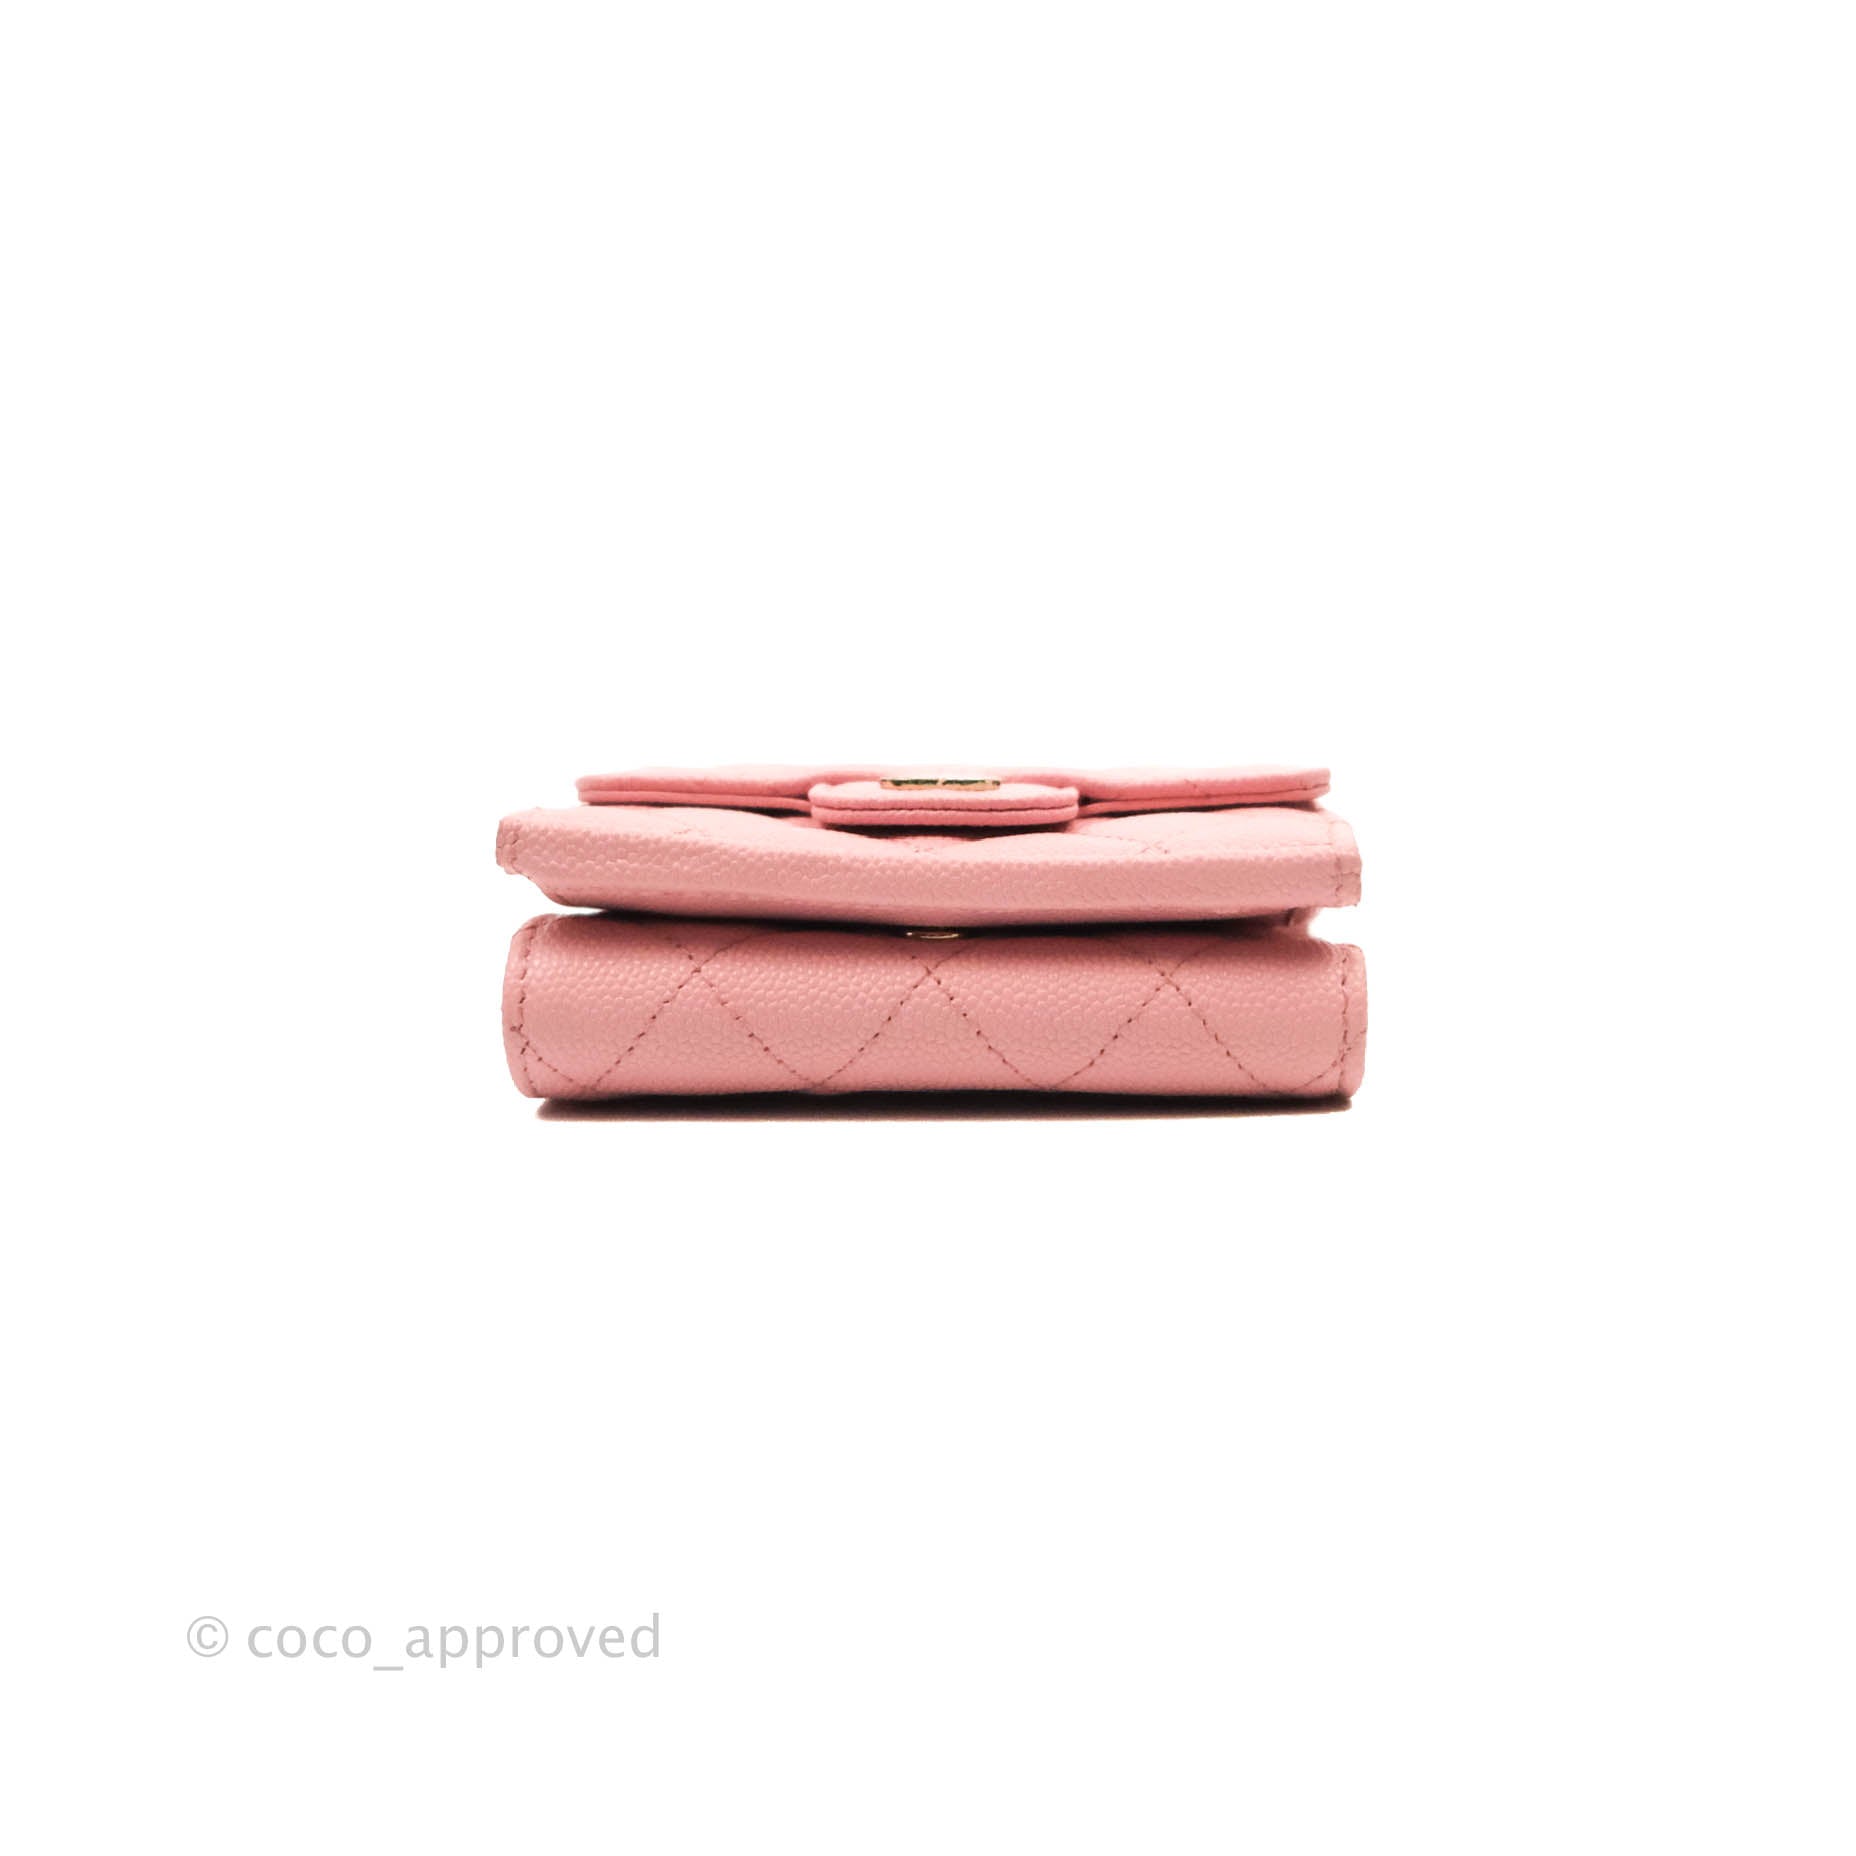 Chanel Pink Caviar Zip Around Wallet Q6ADVD0FPB023